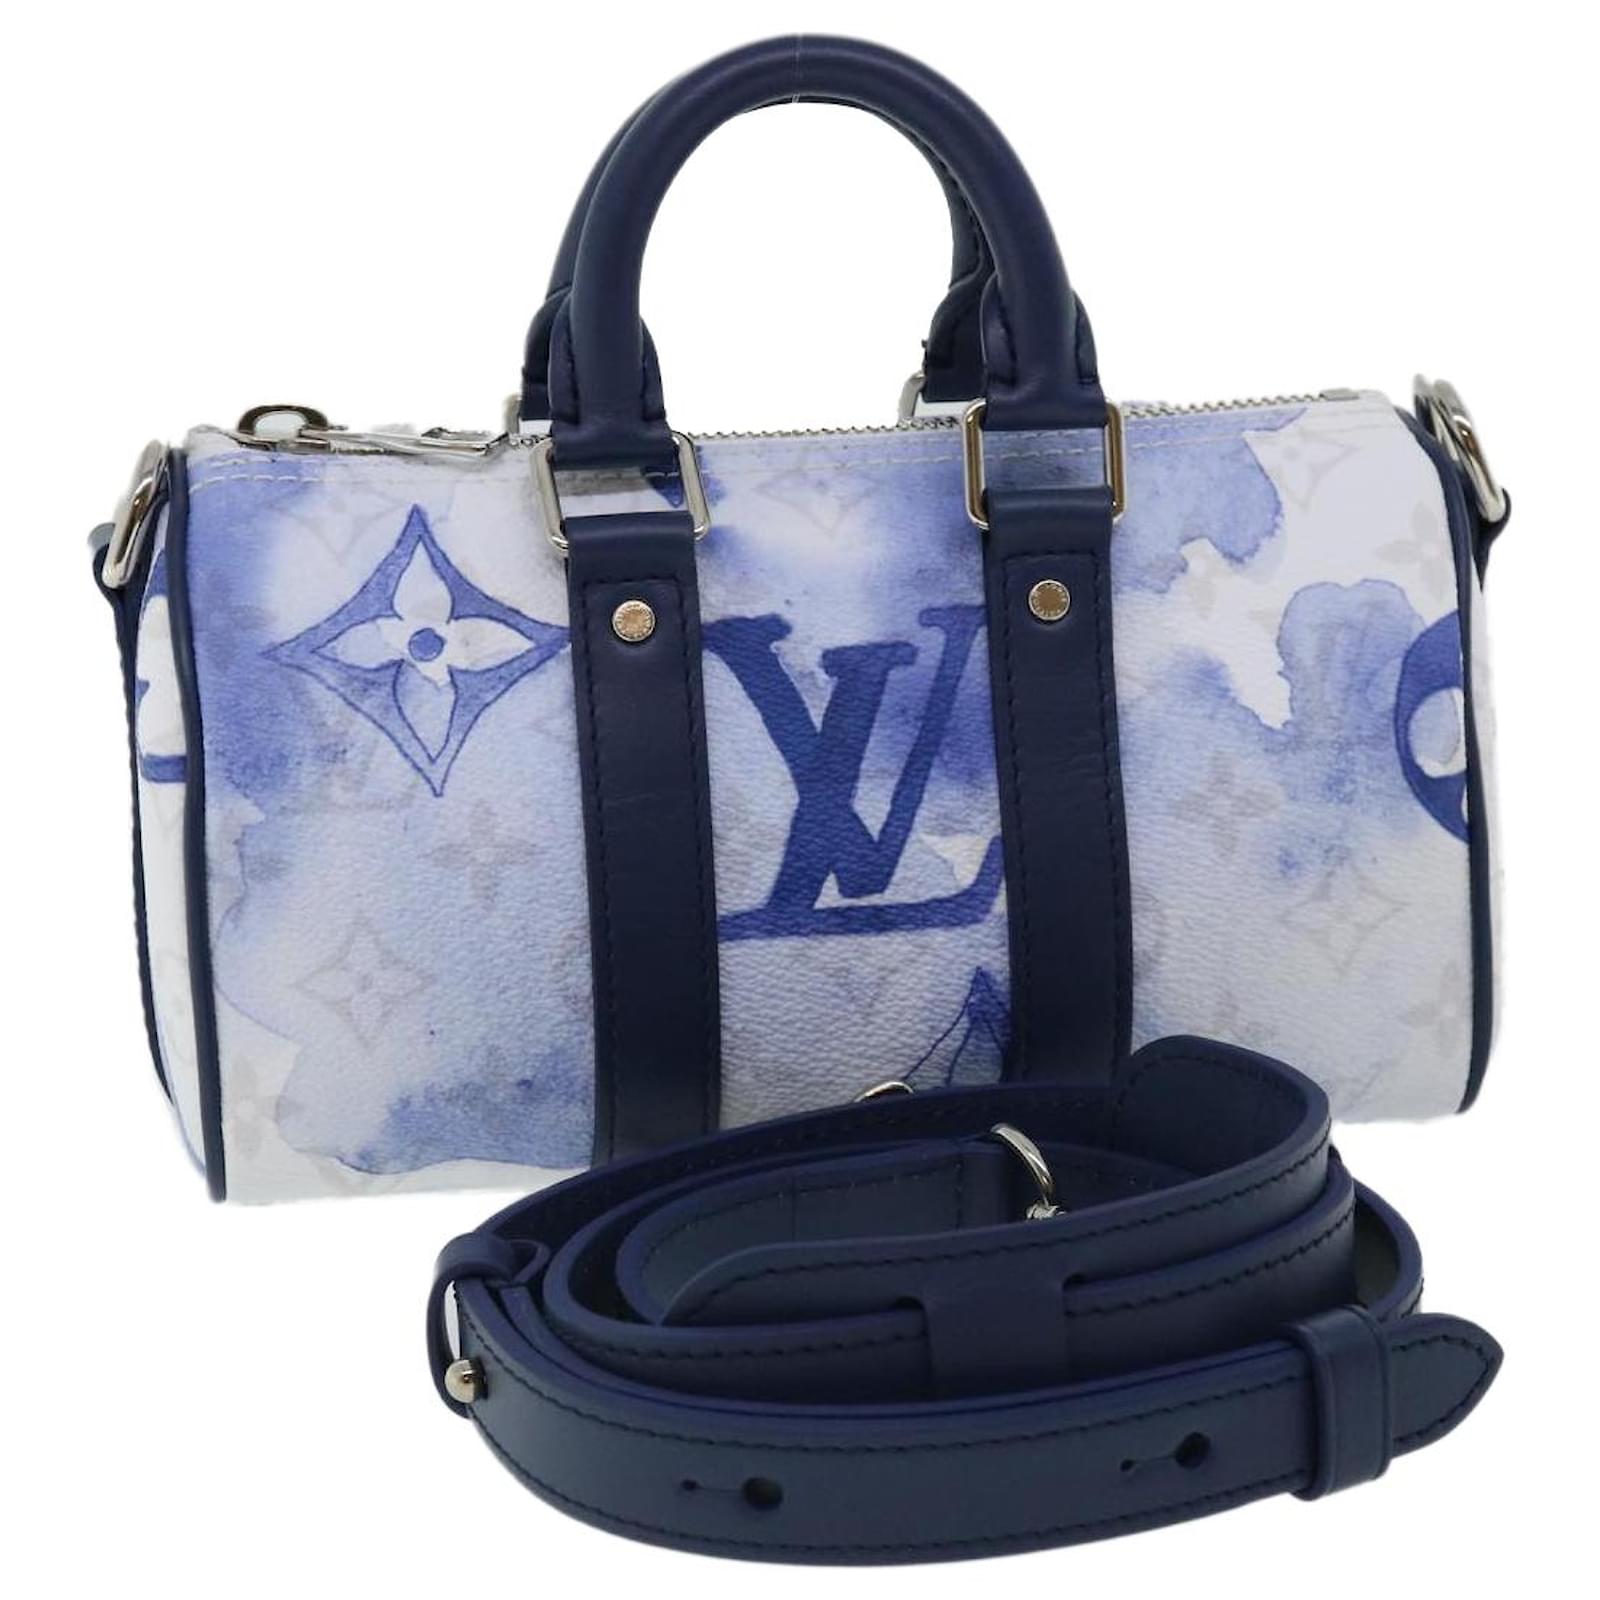 Handbags Louis Vuitton Louis Vuitton Monogram Empreinte on The Go PM Hand Bag 2way M45659 LV Auth LT597